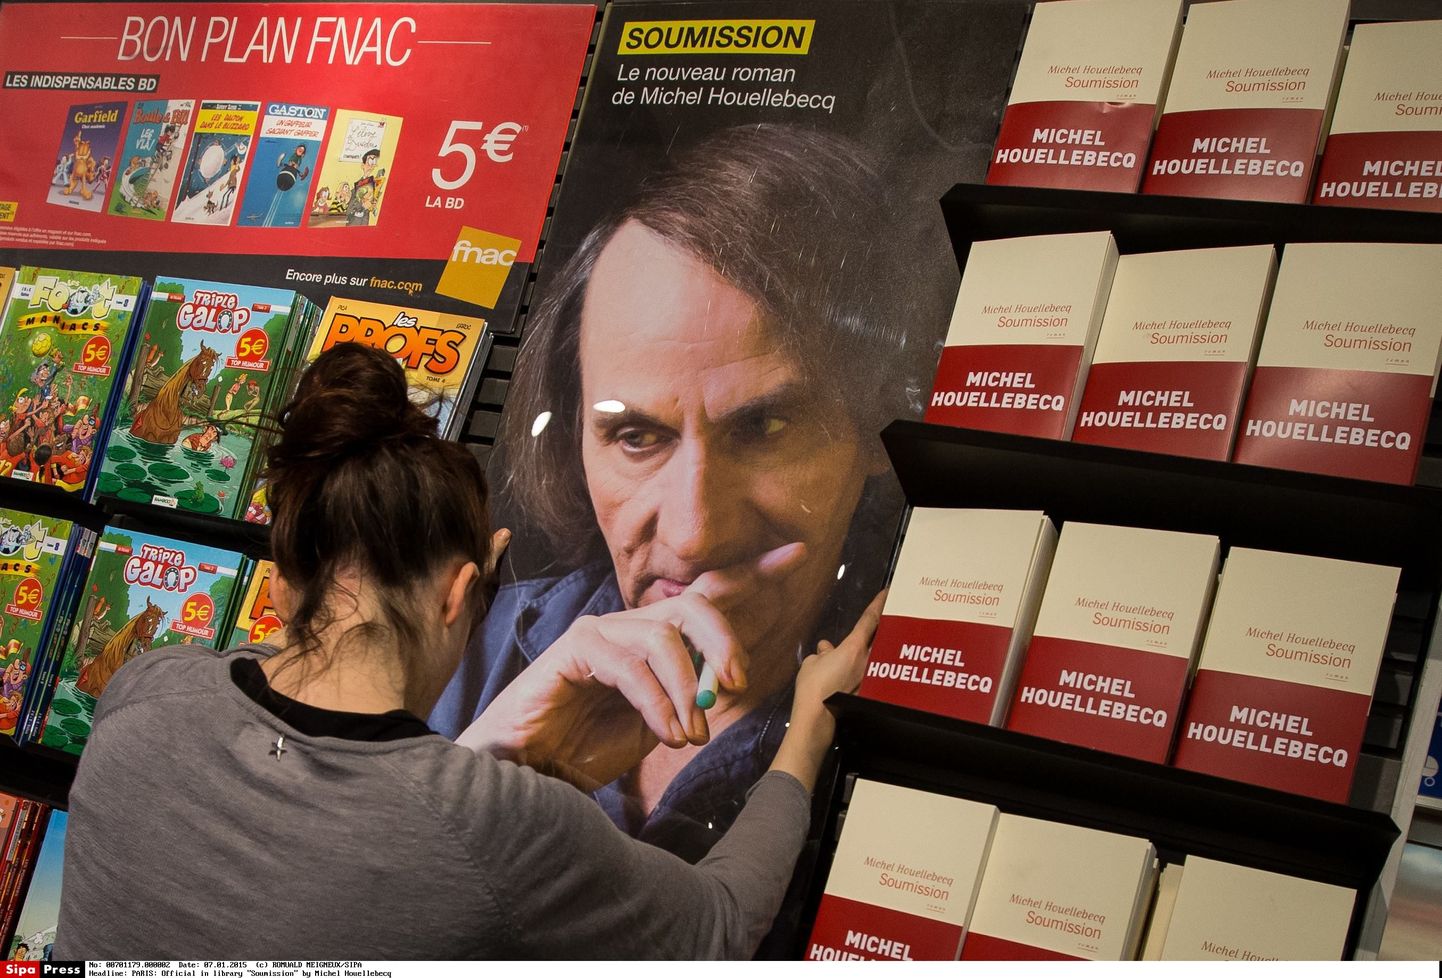 Michel Houellebecqi teose müügilett Pariisi raamatupoes.